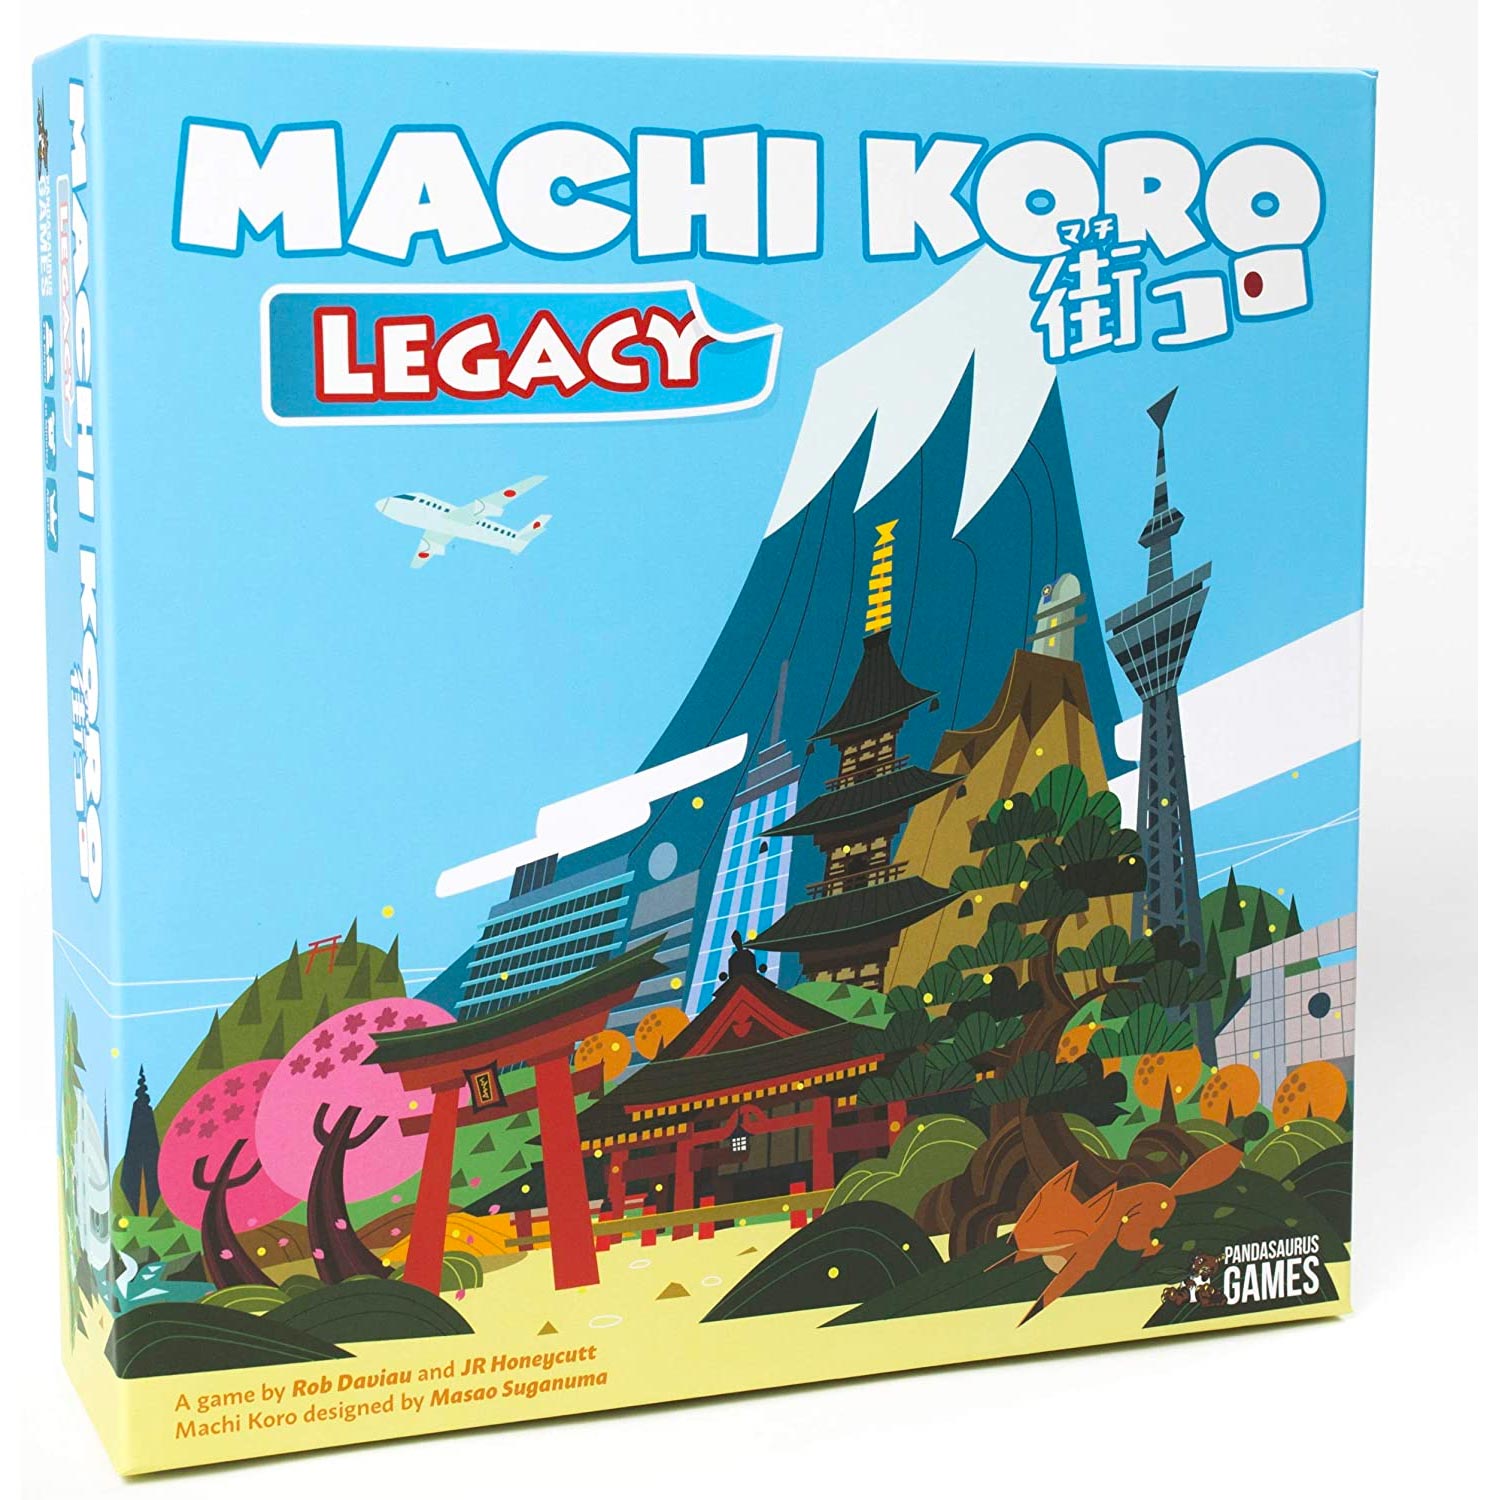 The box of Machi Koro.